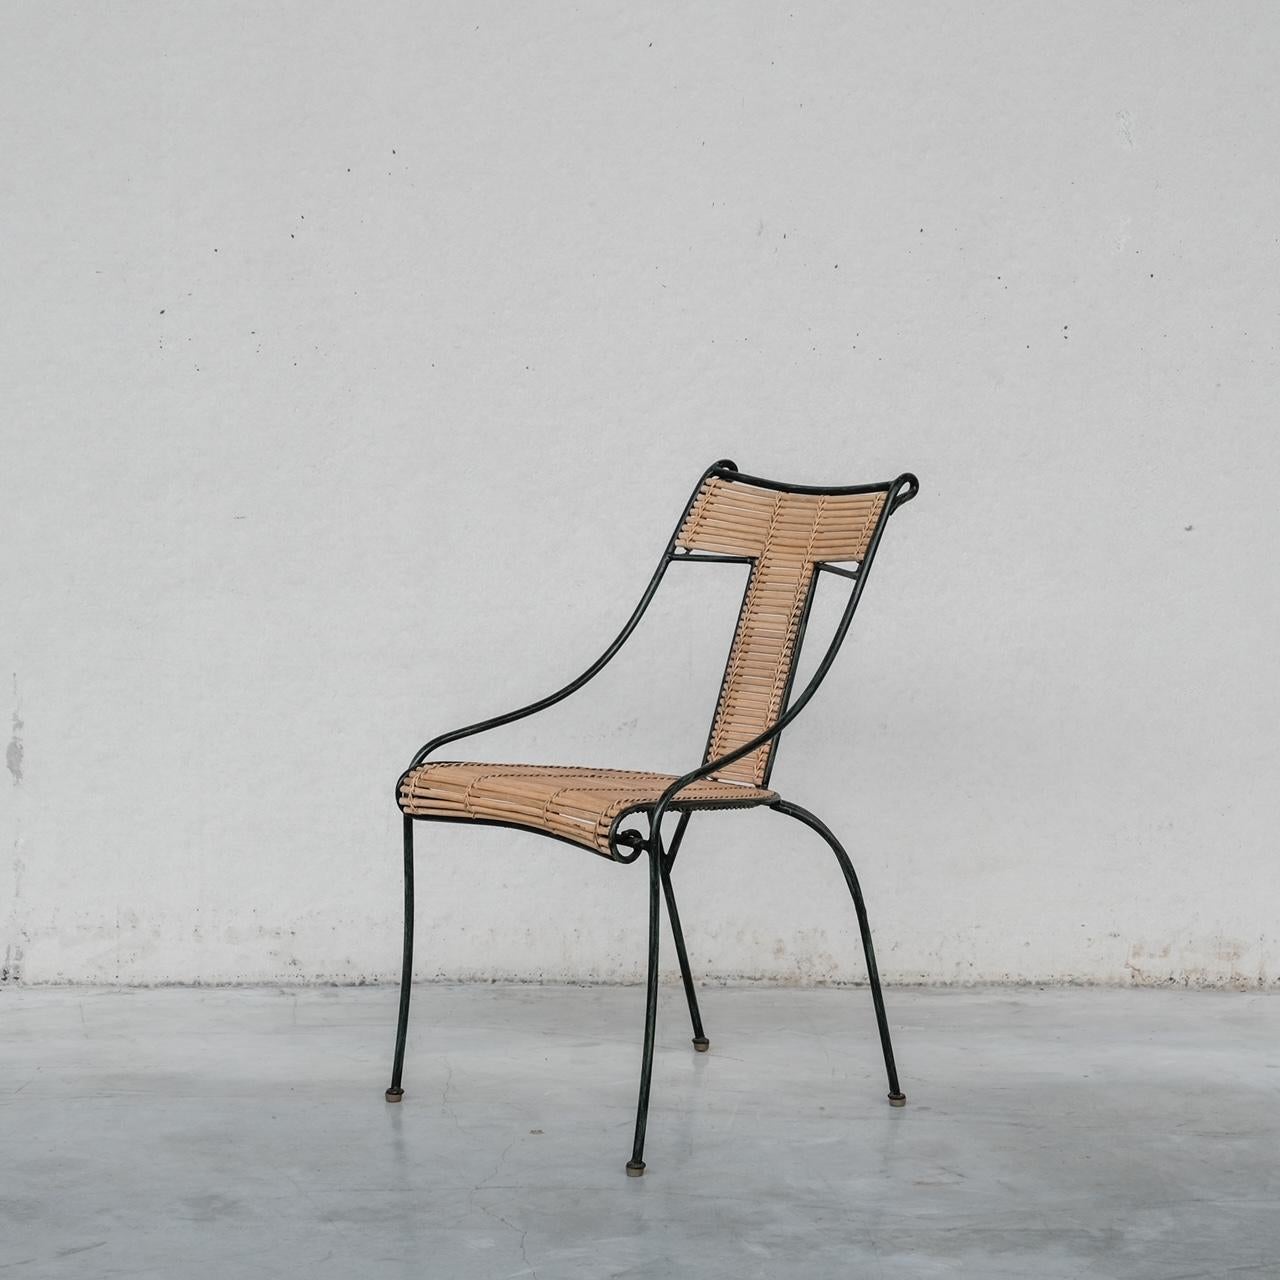 Ensemble de huit chaises de salle à manger. 

Fer peint et bambou. 

Danemark, années 1970. 

Vraisemblablement fabriqué par Lysberg Hansen & Therp

Bon état général. Une ou deux chaises sont un peu effilochées, mais elles sont encore très